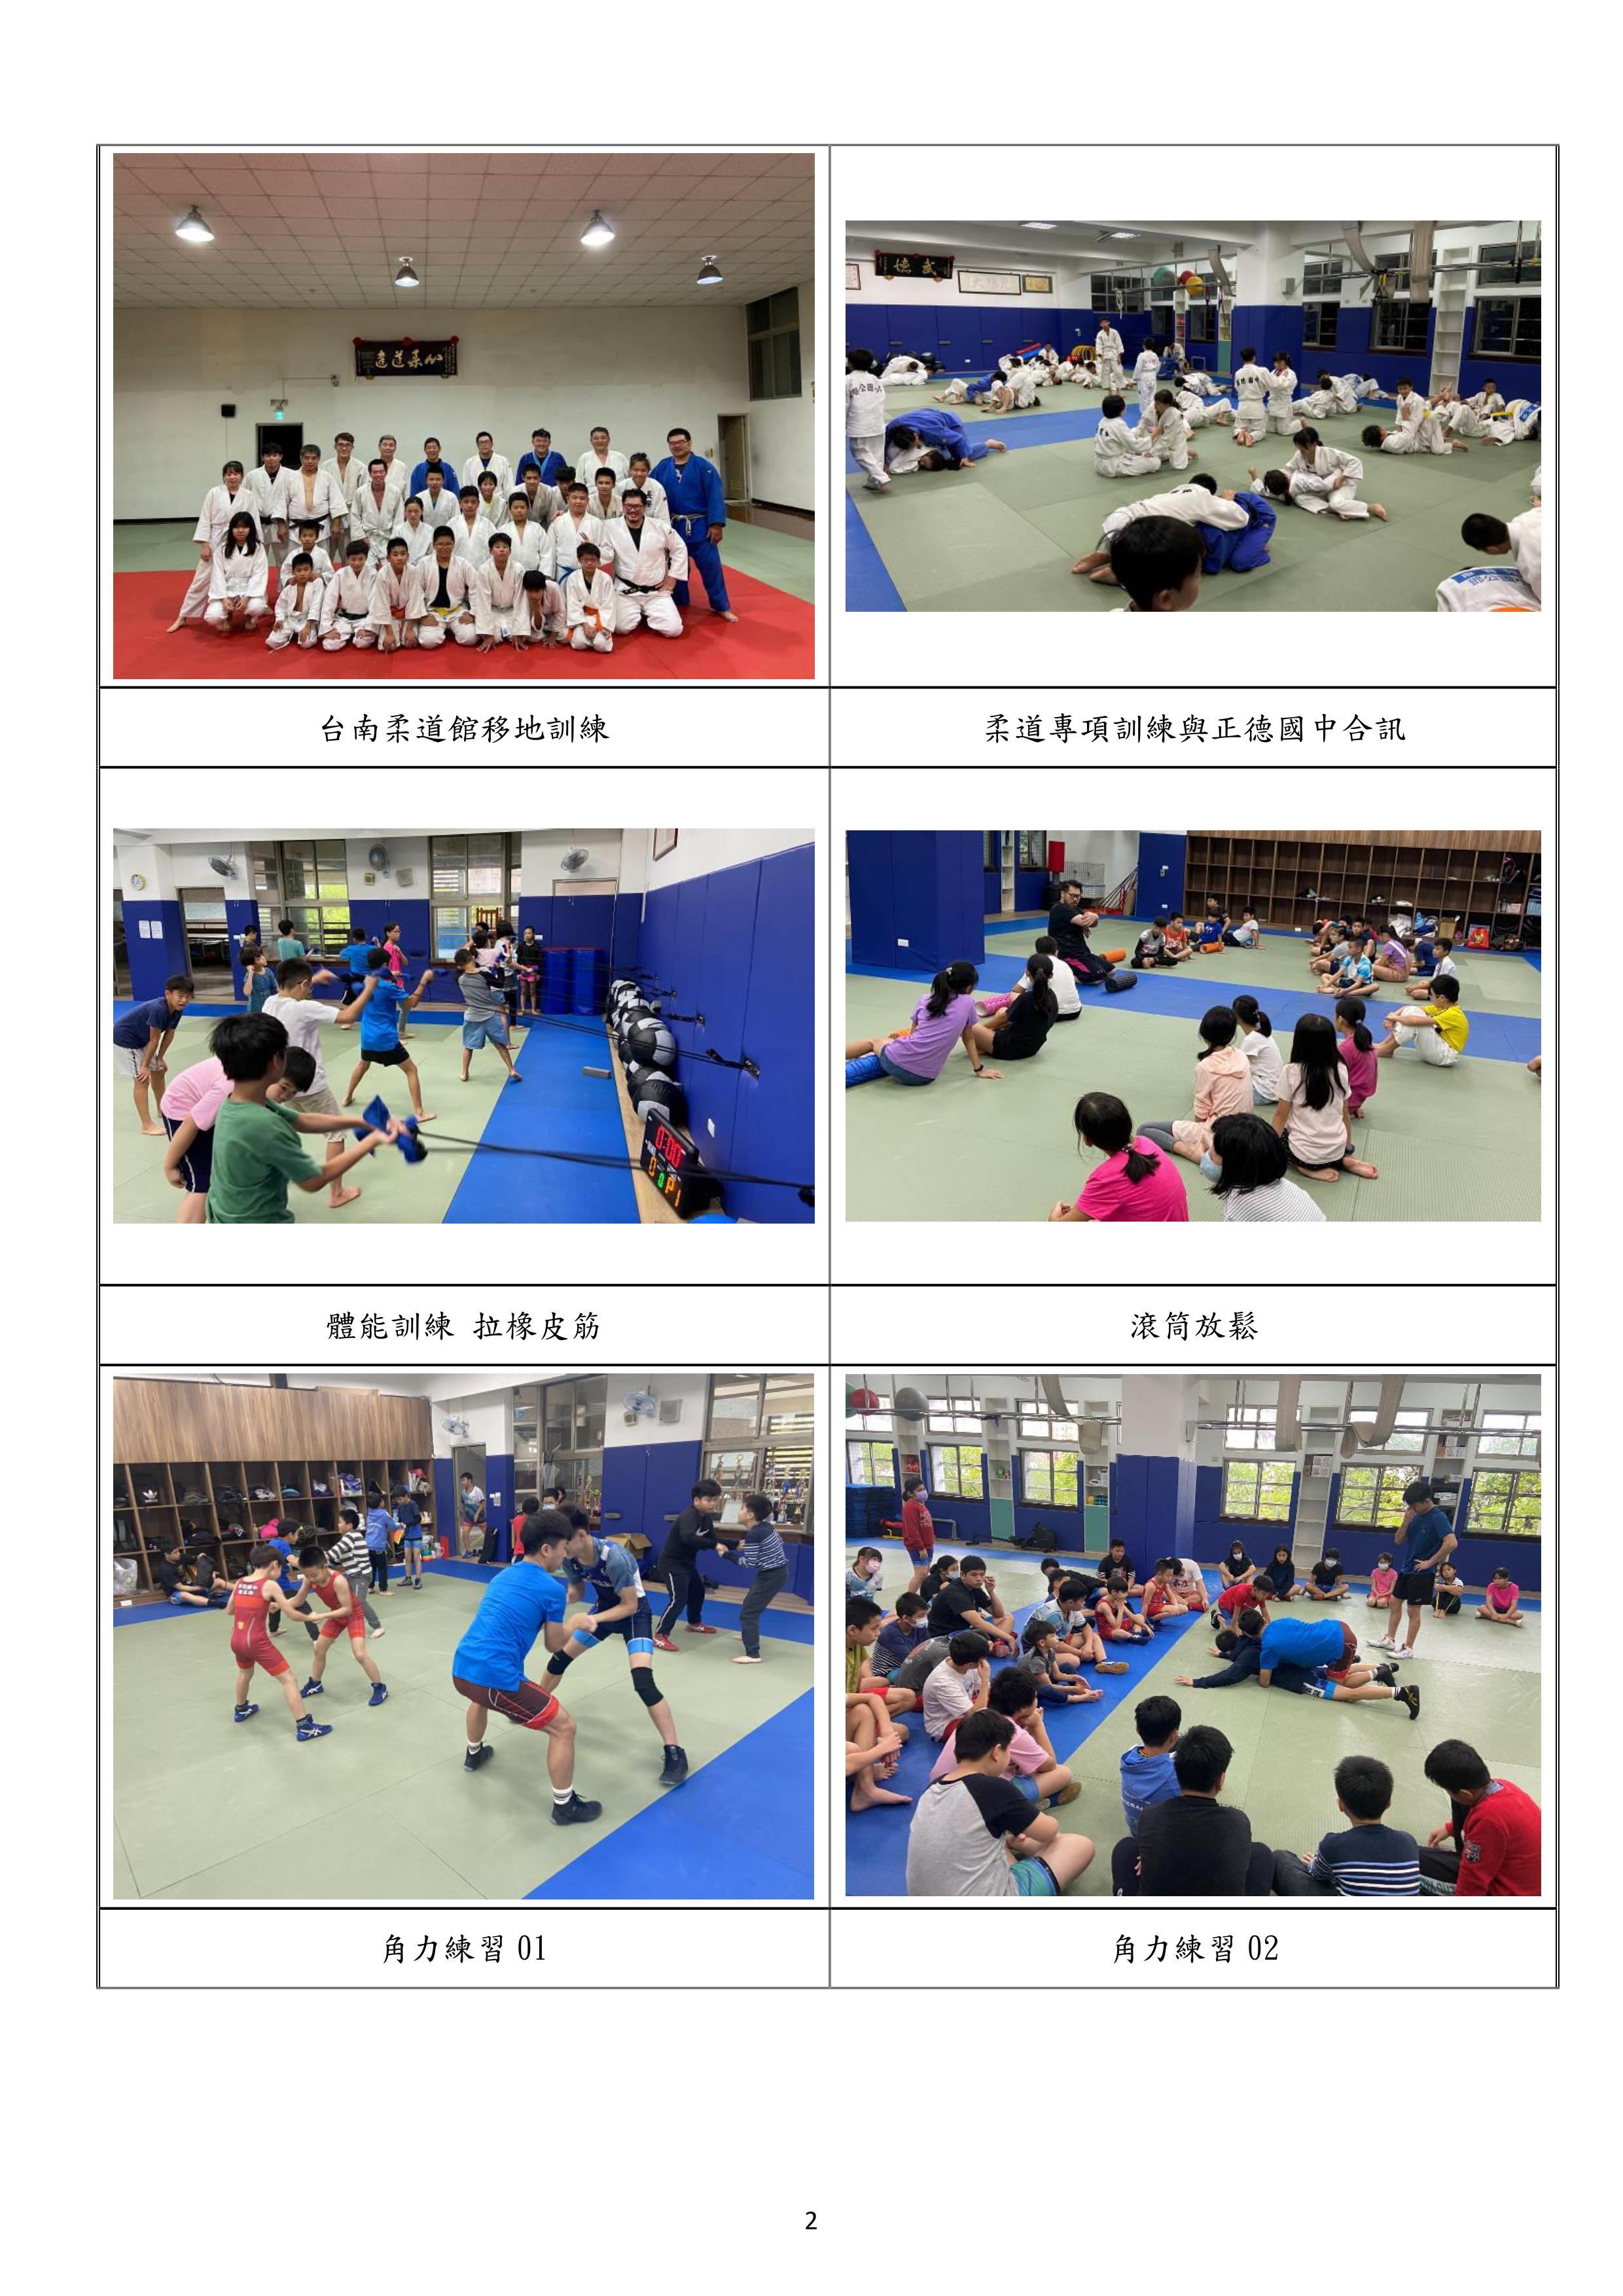 柔道角力隊參賽訓練活動相關照片